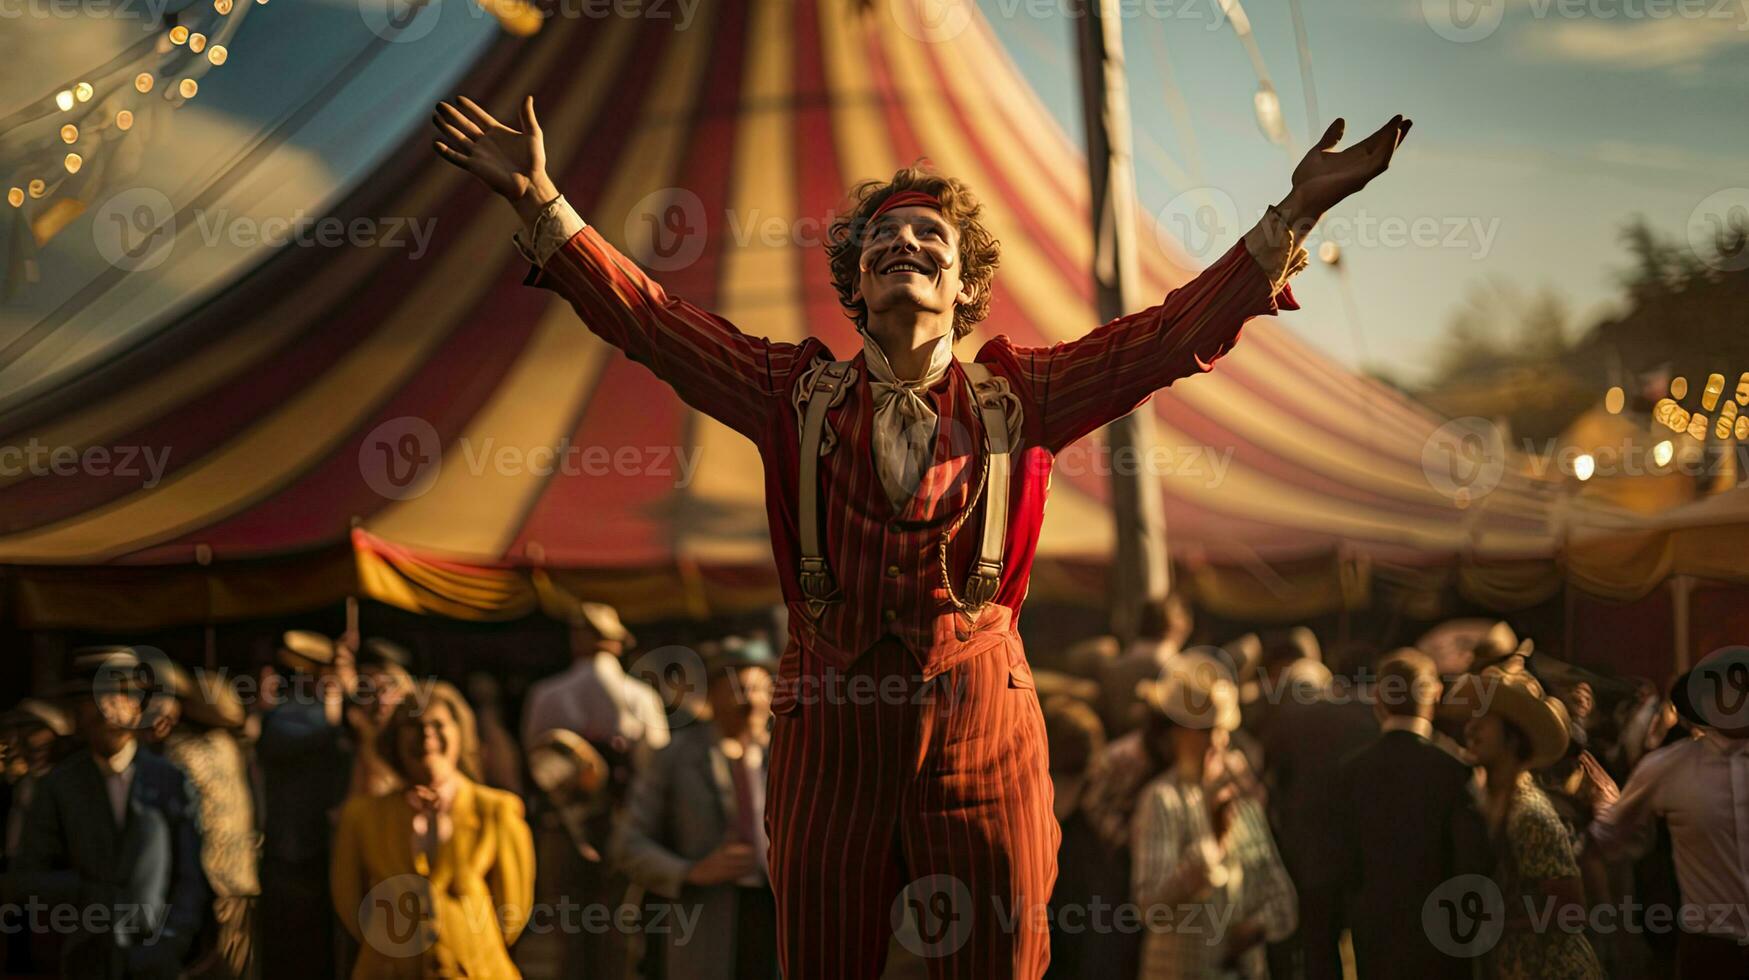 Mens proost mensen en stijgen handen naar lucht in voorkant van circus tent. foto